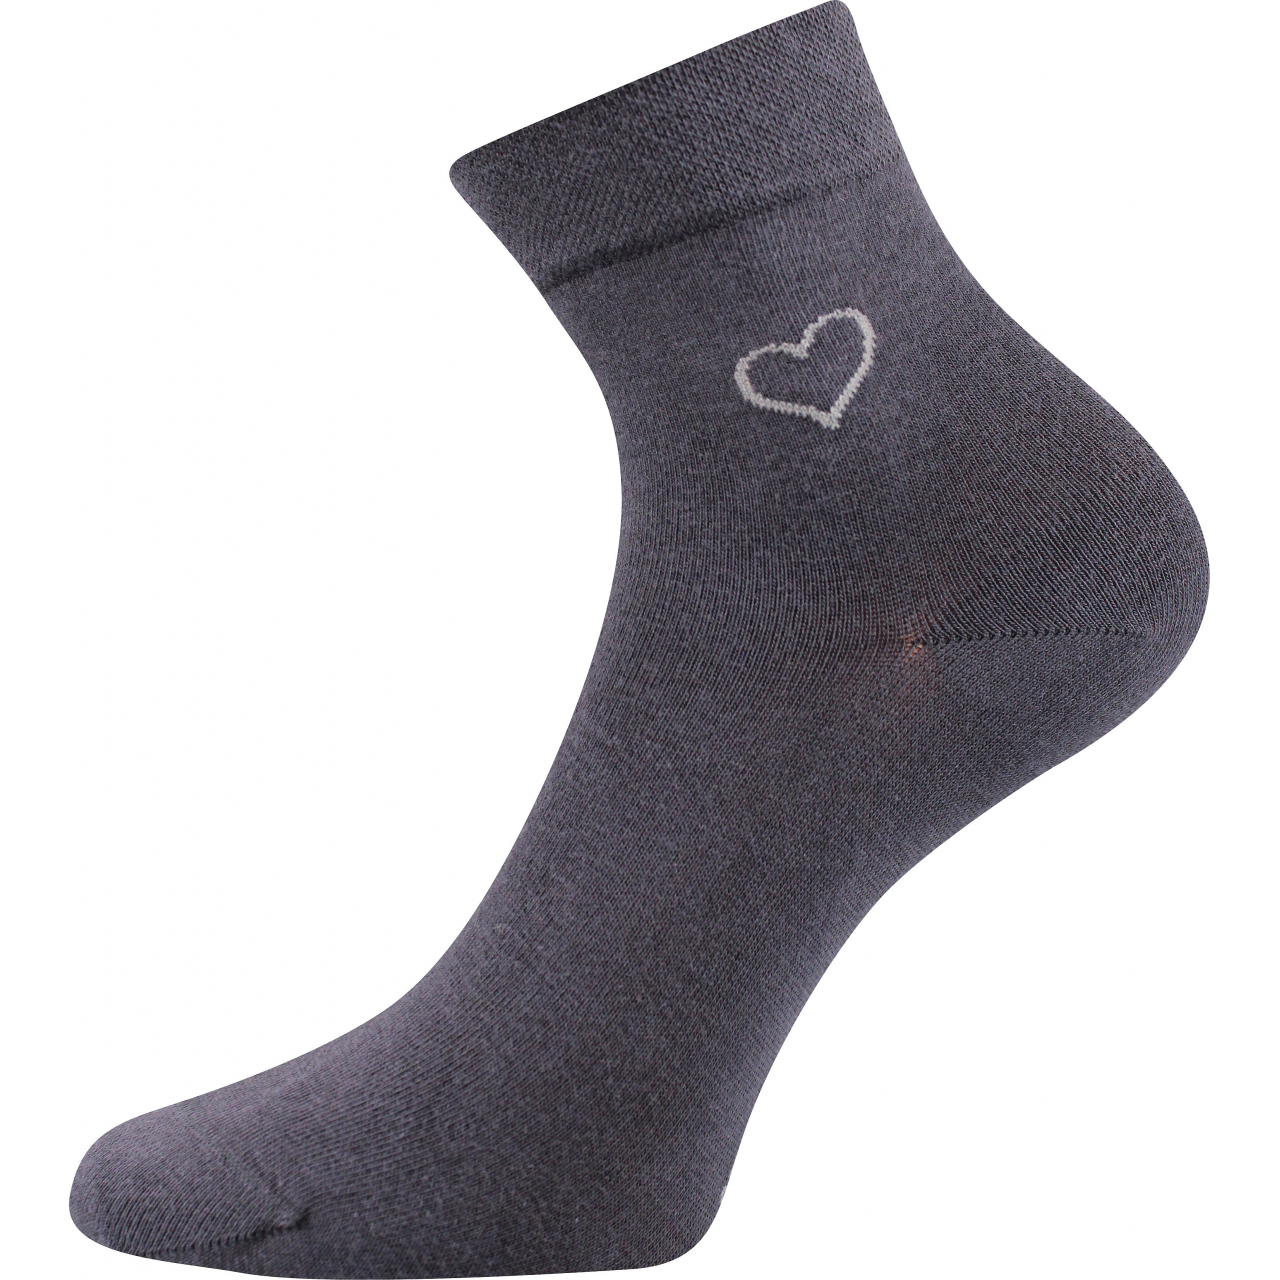 Ponožky elegantní dámské Lonka Filiona - tmavě šedé, 35-38